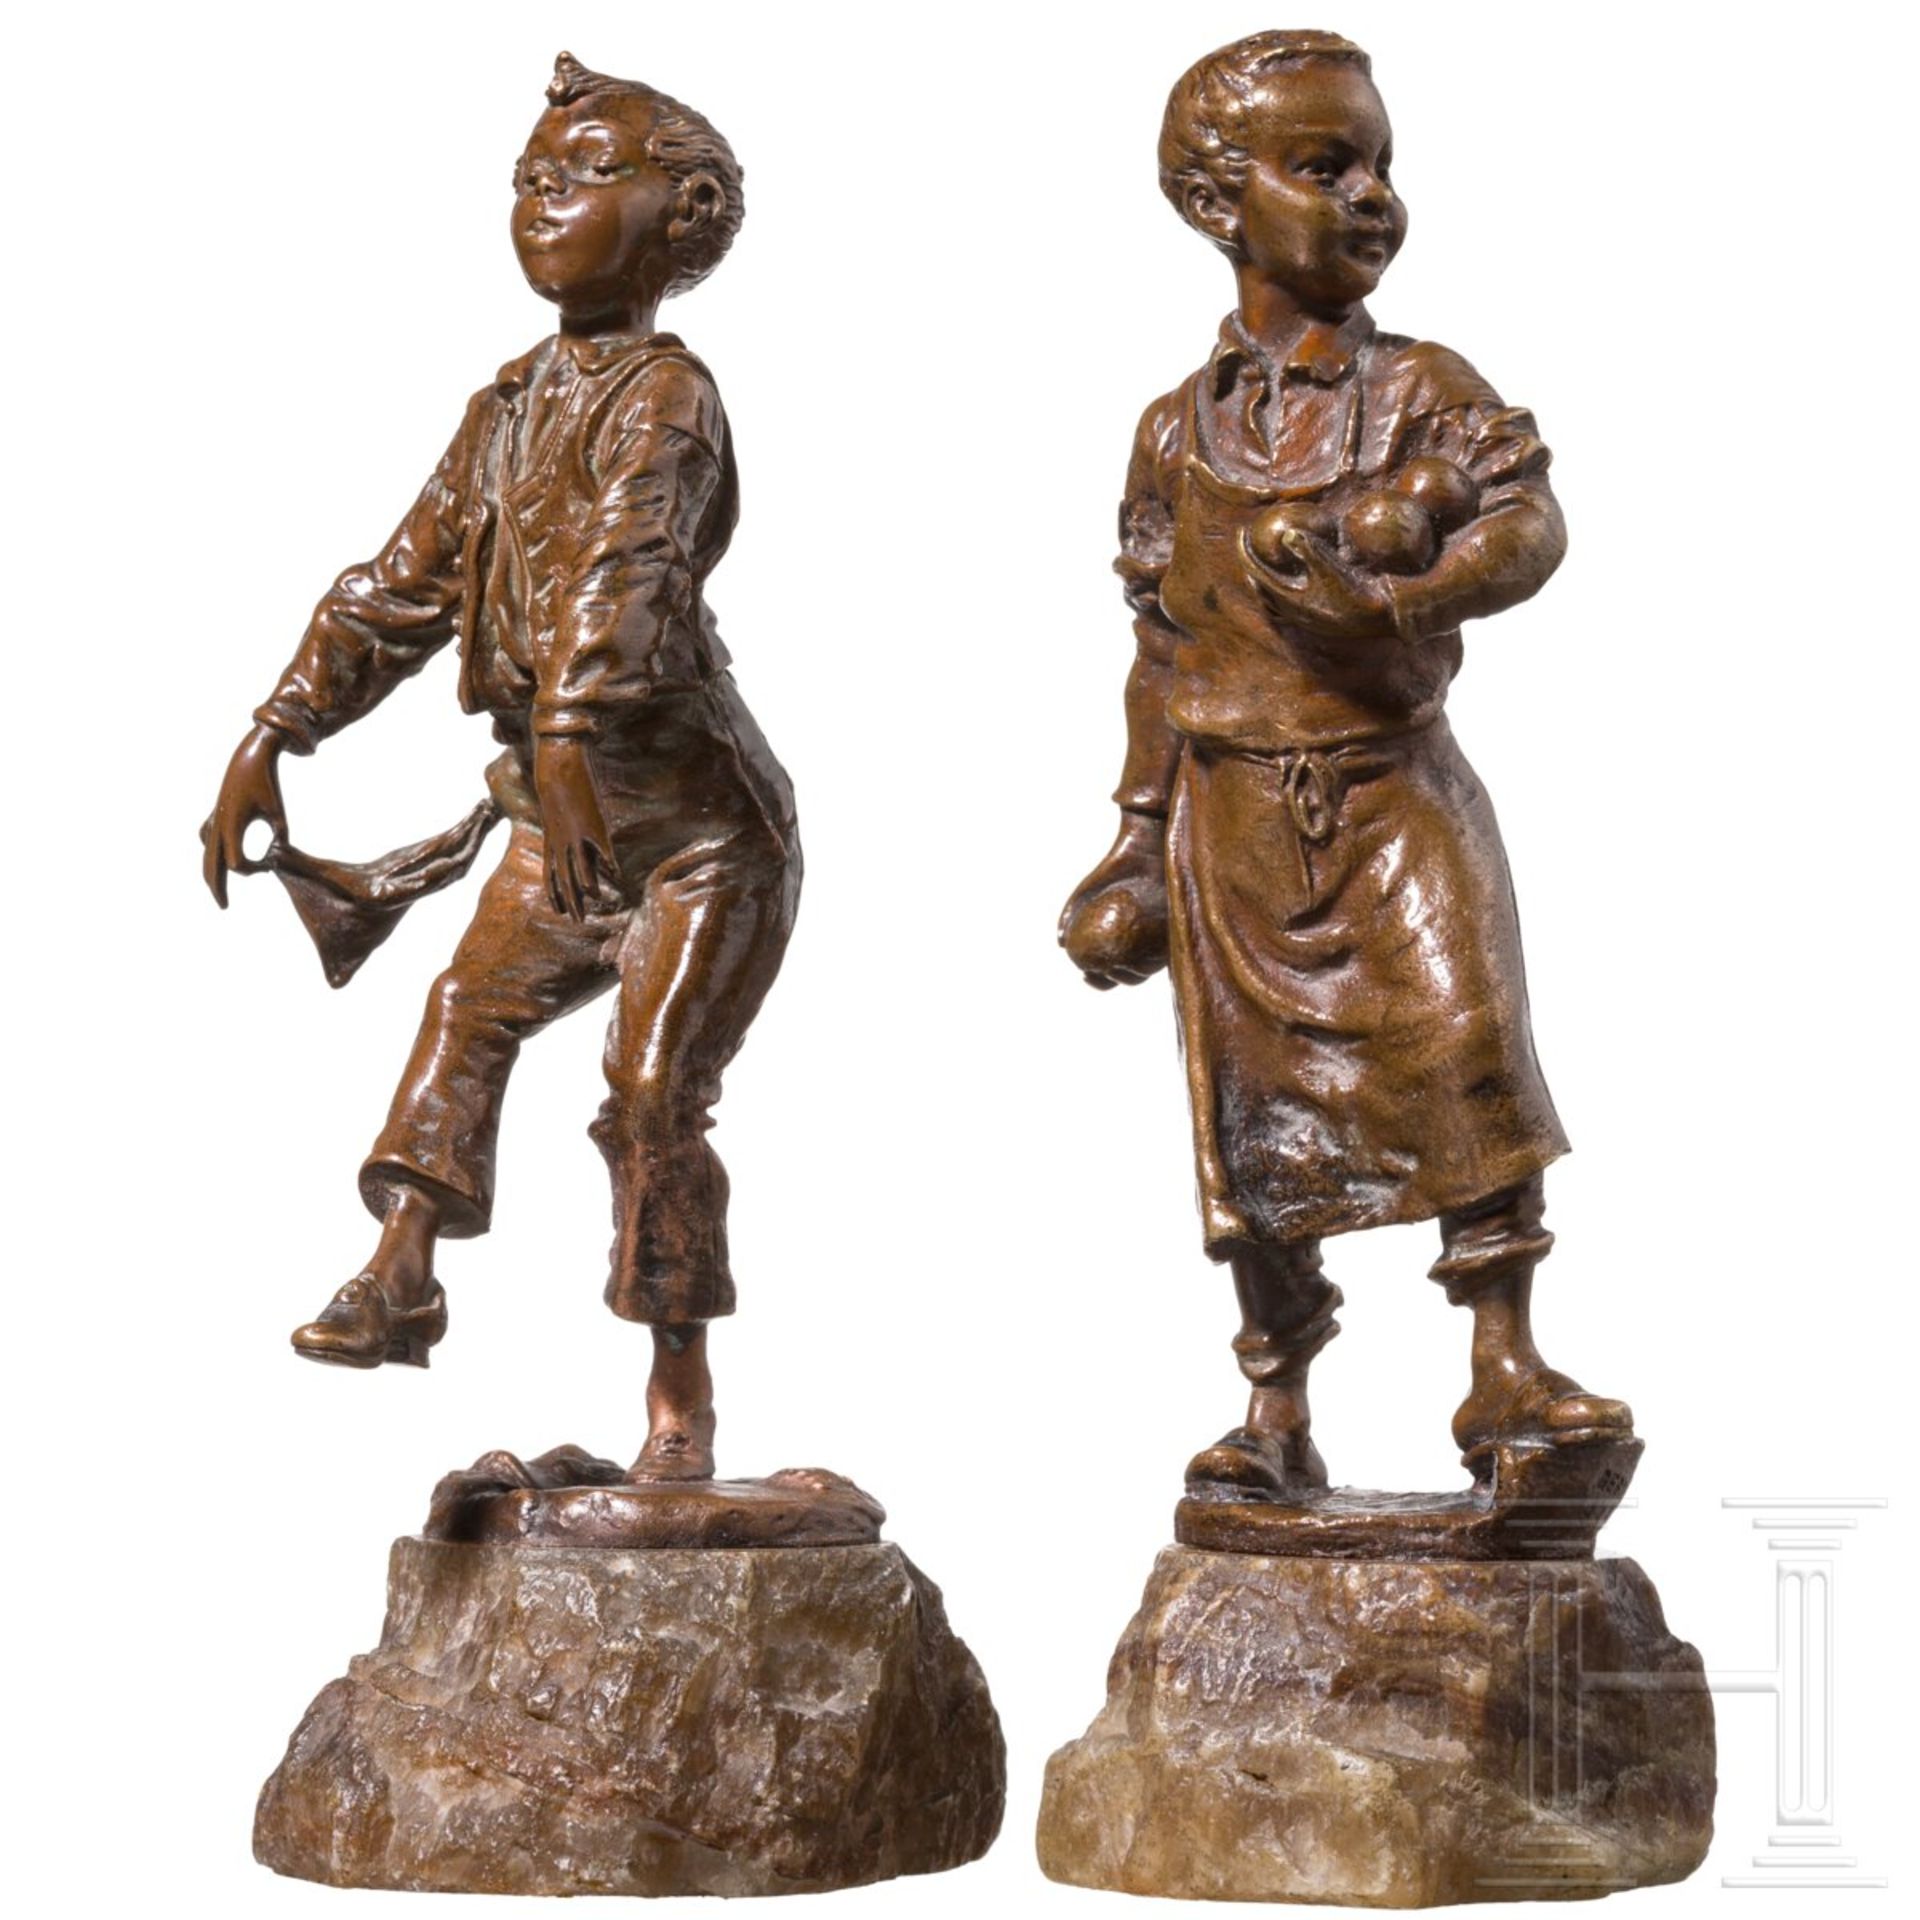 Zwei spielende Jungen, Bruno Zach (1891 - 1935) und Carl Kauba (1865 - 1922) 